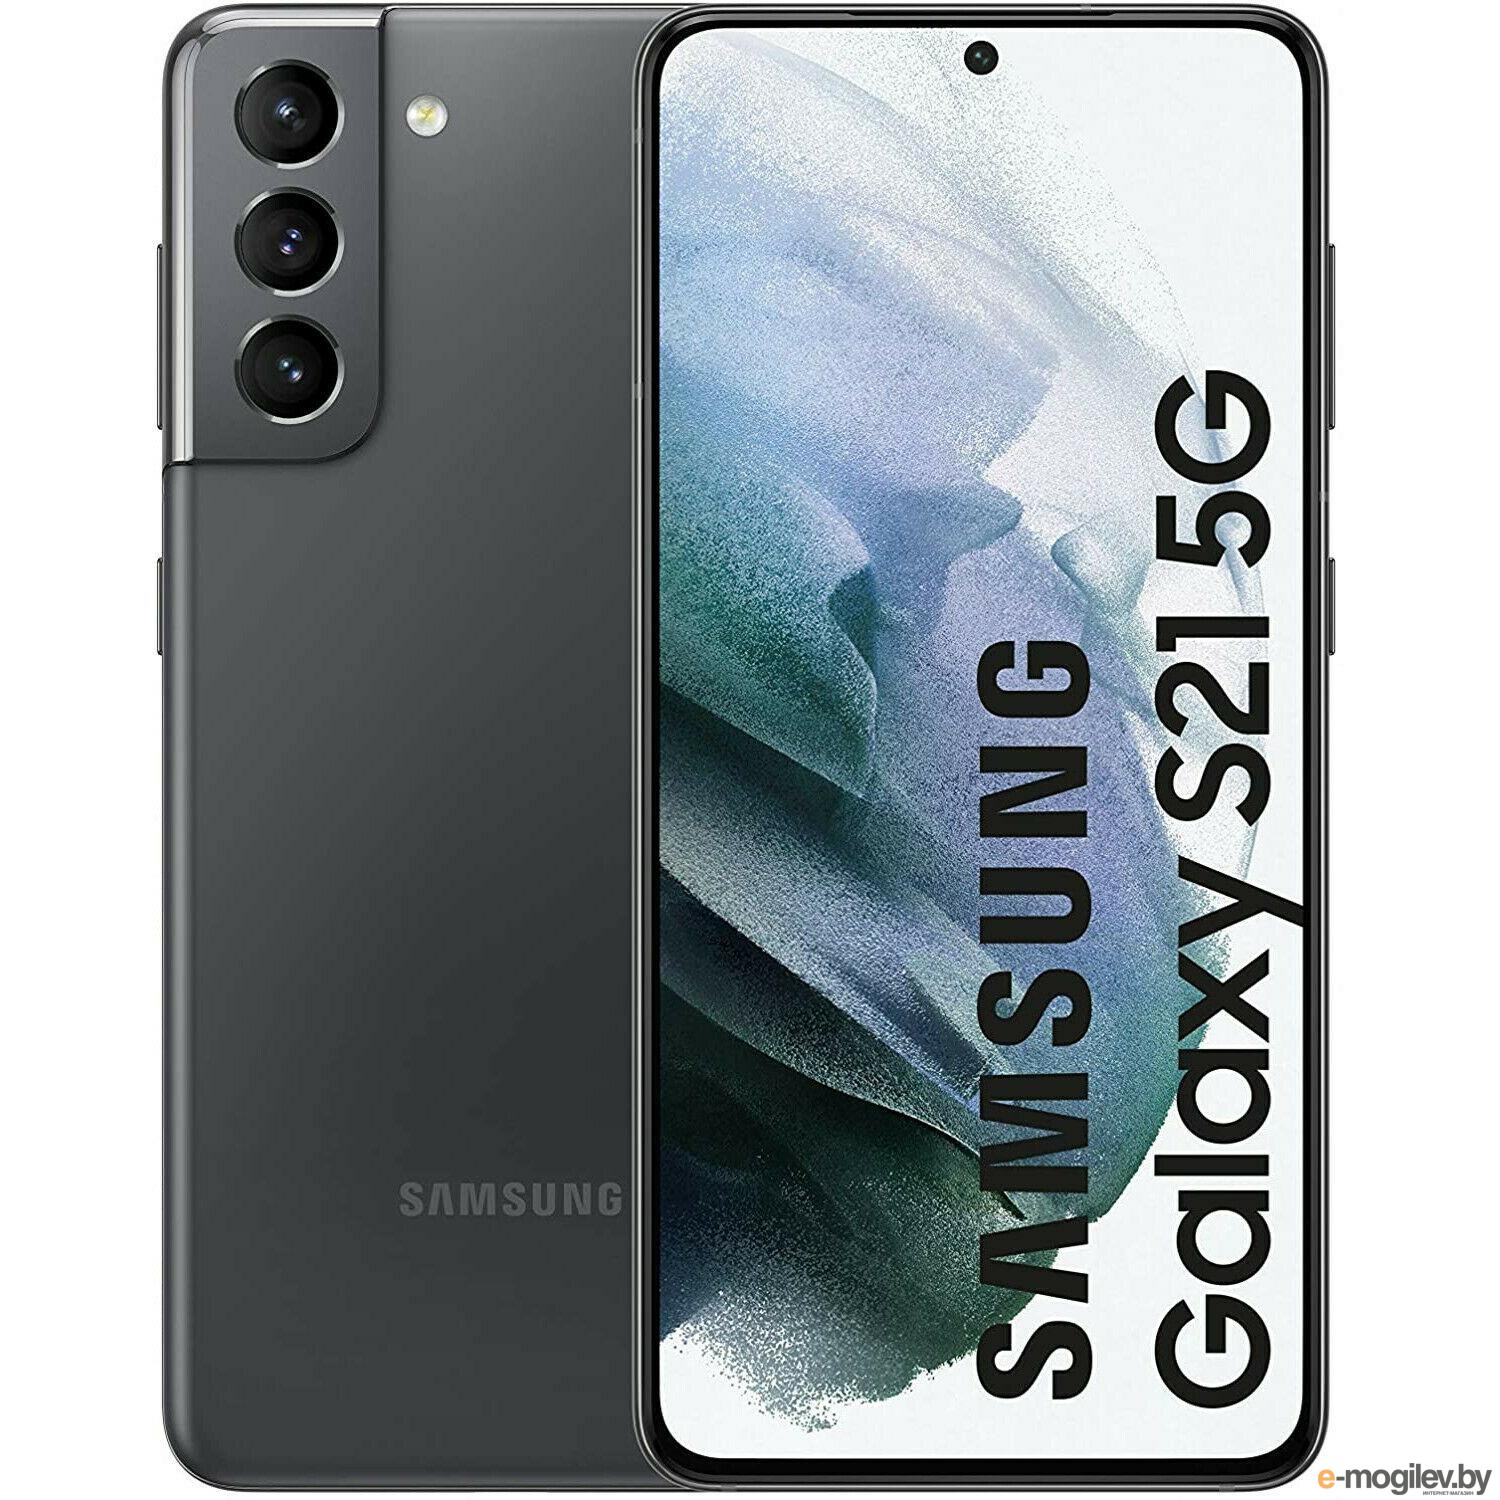 S21 samsung процессор. Самсунг s21. Samsung Galaxy s21 Ultra 5g. Samsung Galaxy s21 5g 128gb. Samsung s21 Plus.